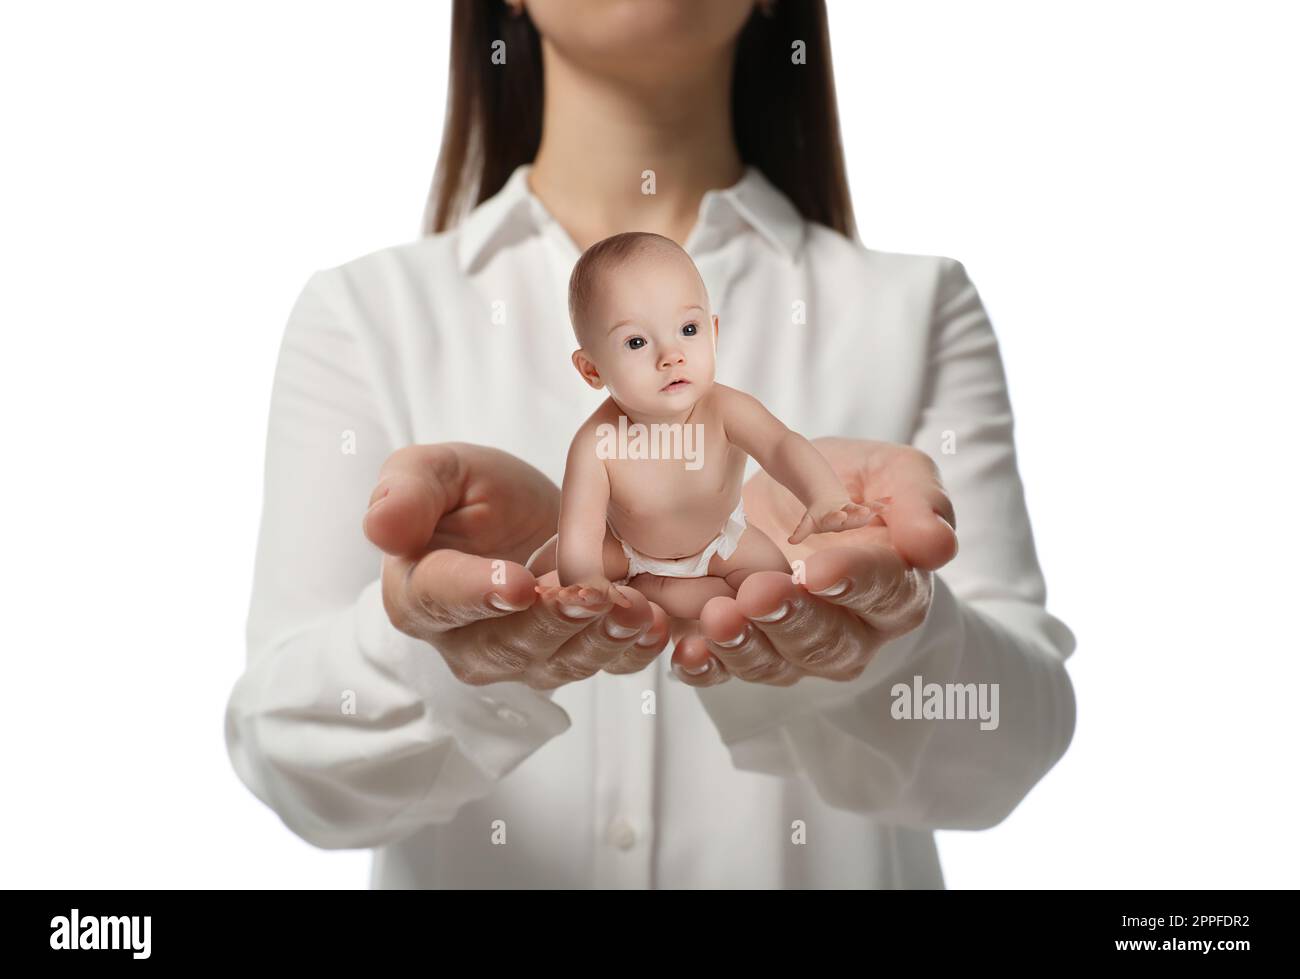 Leihmutterschaftskonzept. Eine Frau, die ein süßes kleines Baby auf weißem Hintergrund hält, Nahaufnahme Stockfoto